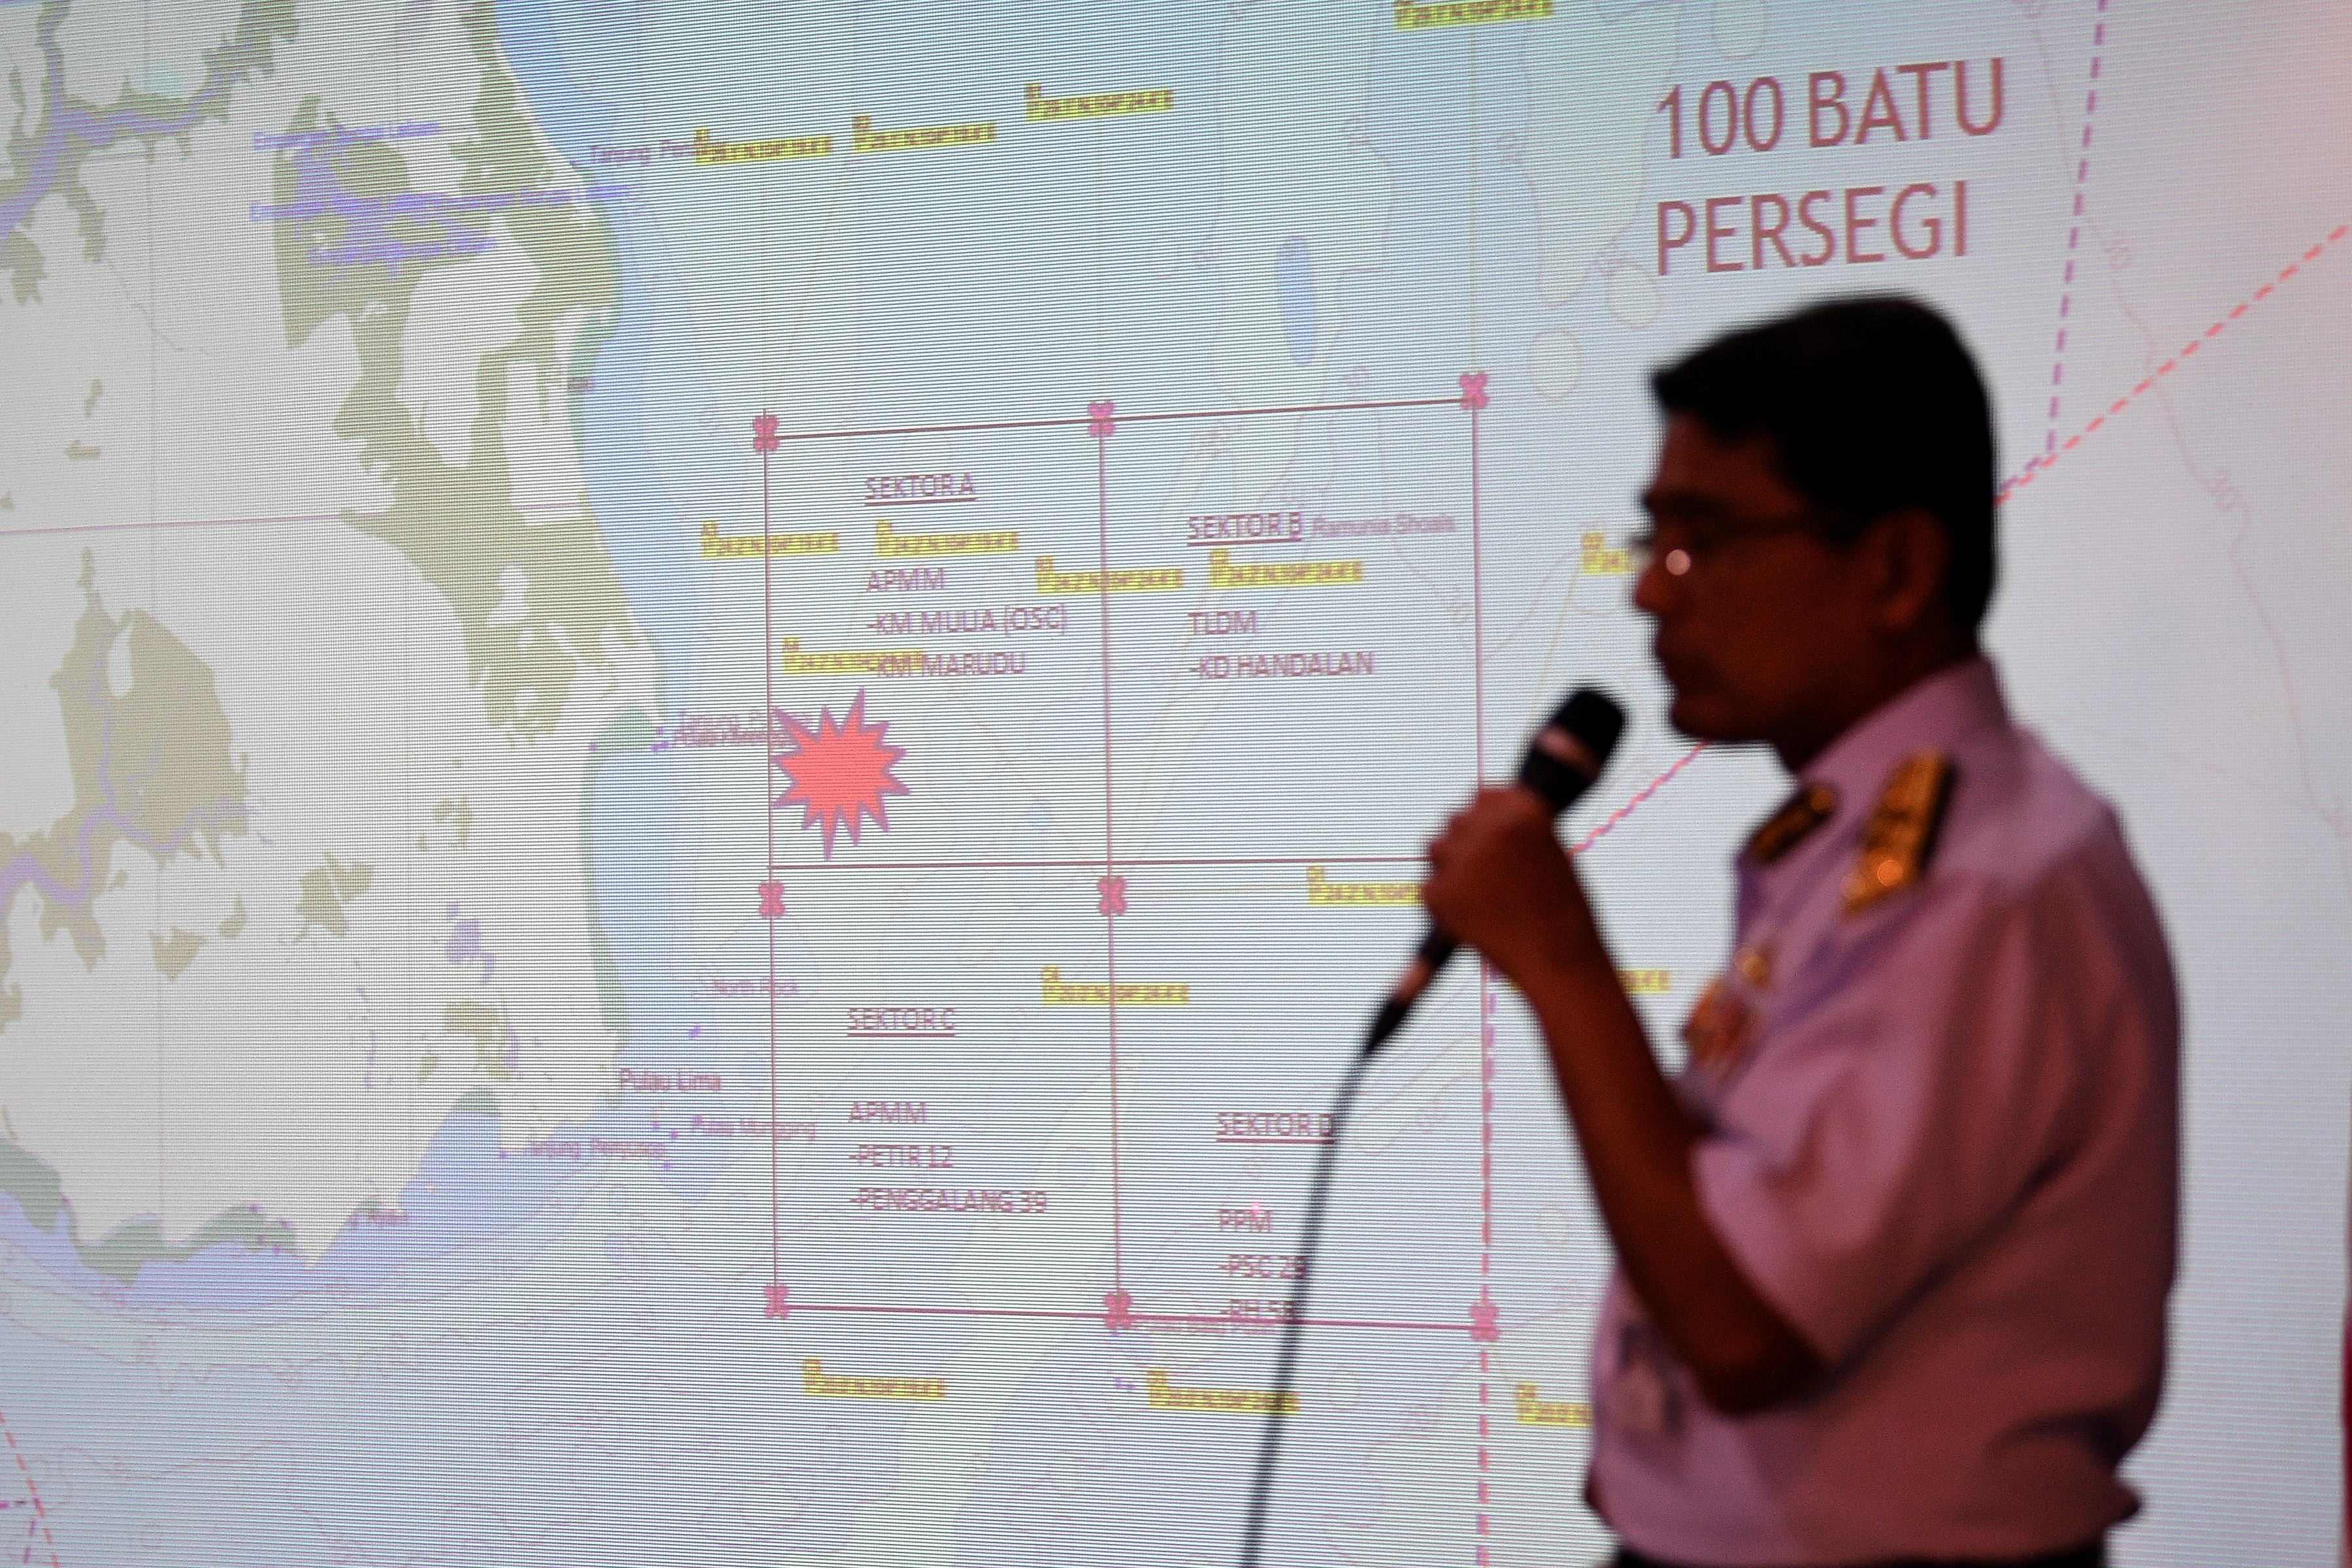 البحرية الماليزية توضح موقع تصادم المدمرة الأمريكية على الخريطة